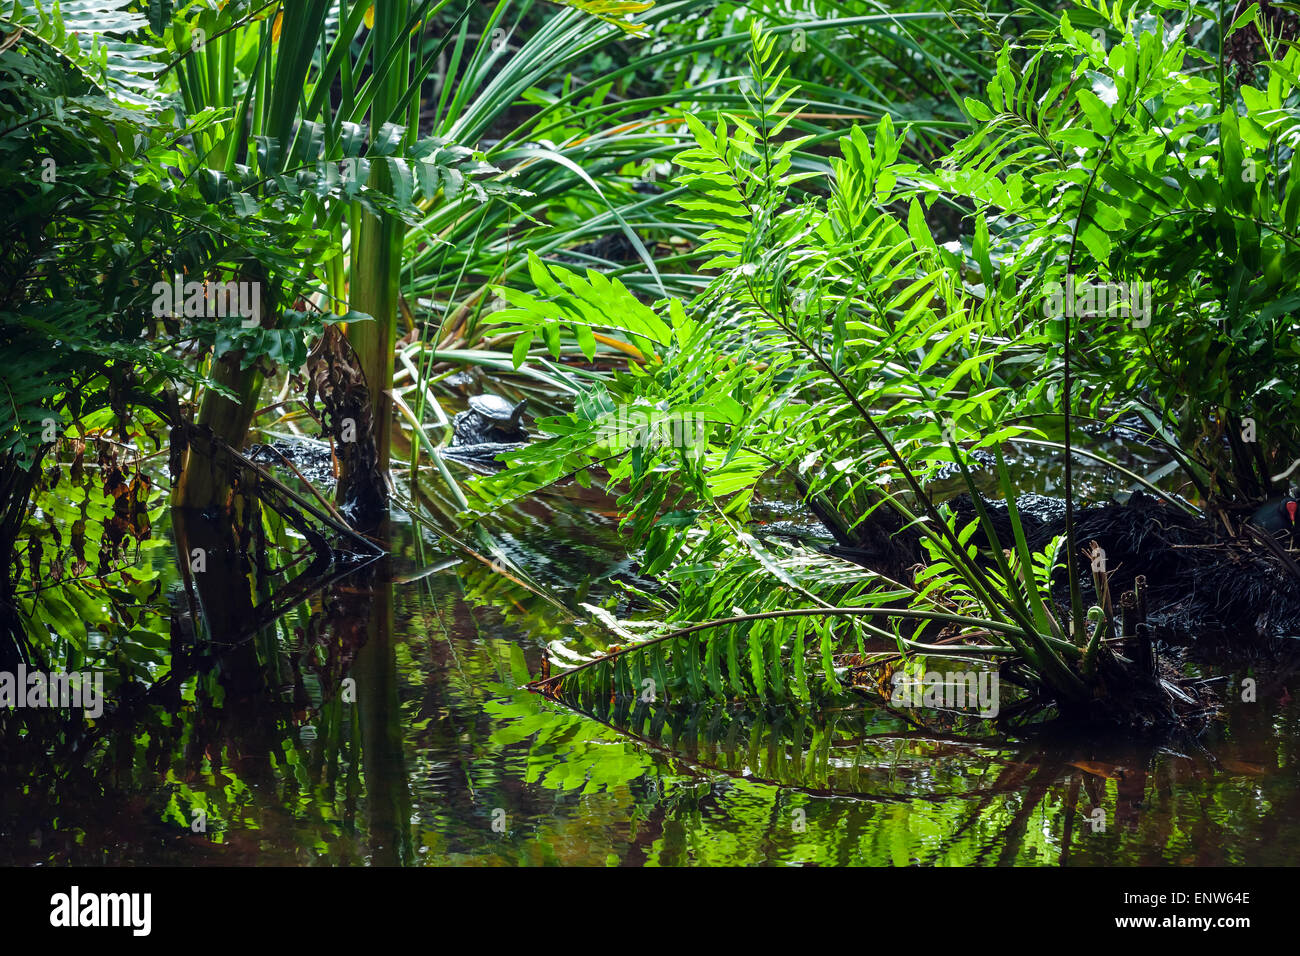 Paysage de forêt tropicale sauvage avec des plantes vertes poussant dans l'eau Banque D'Images